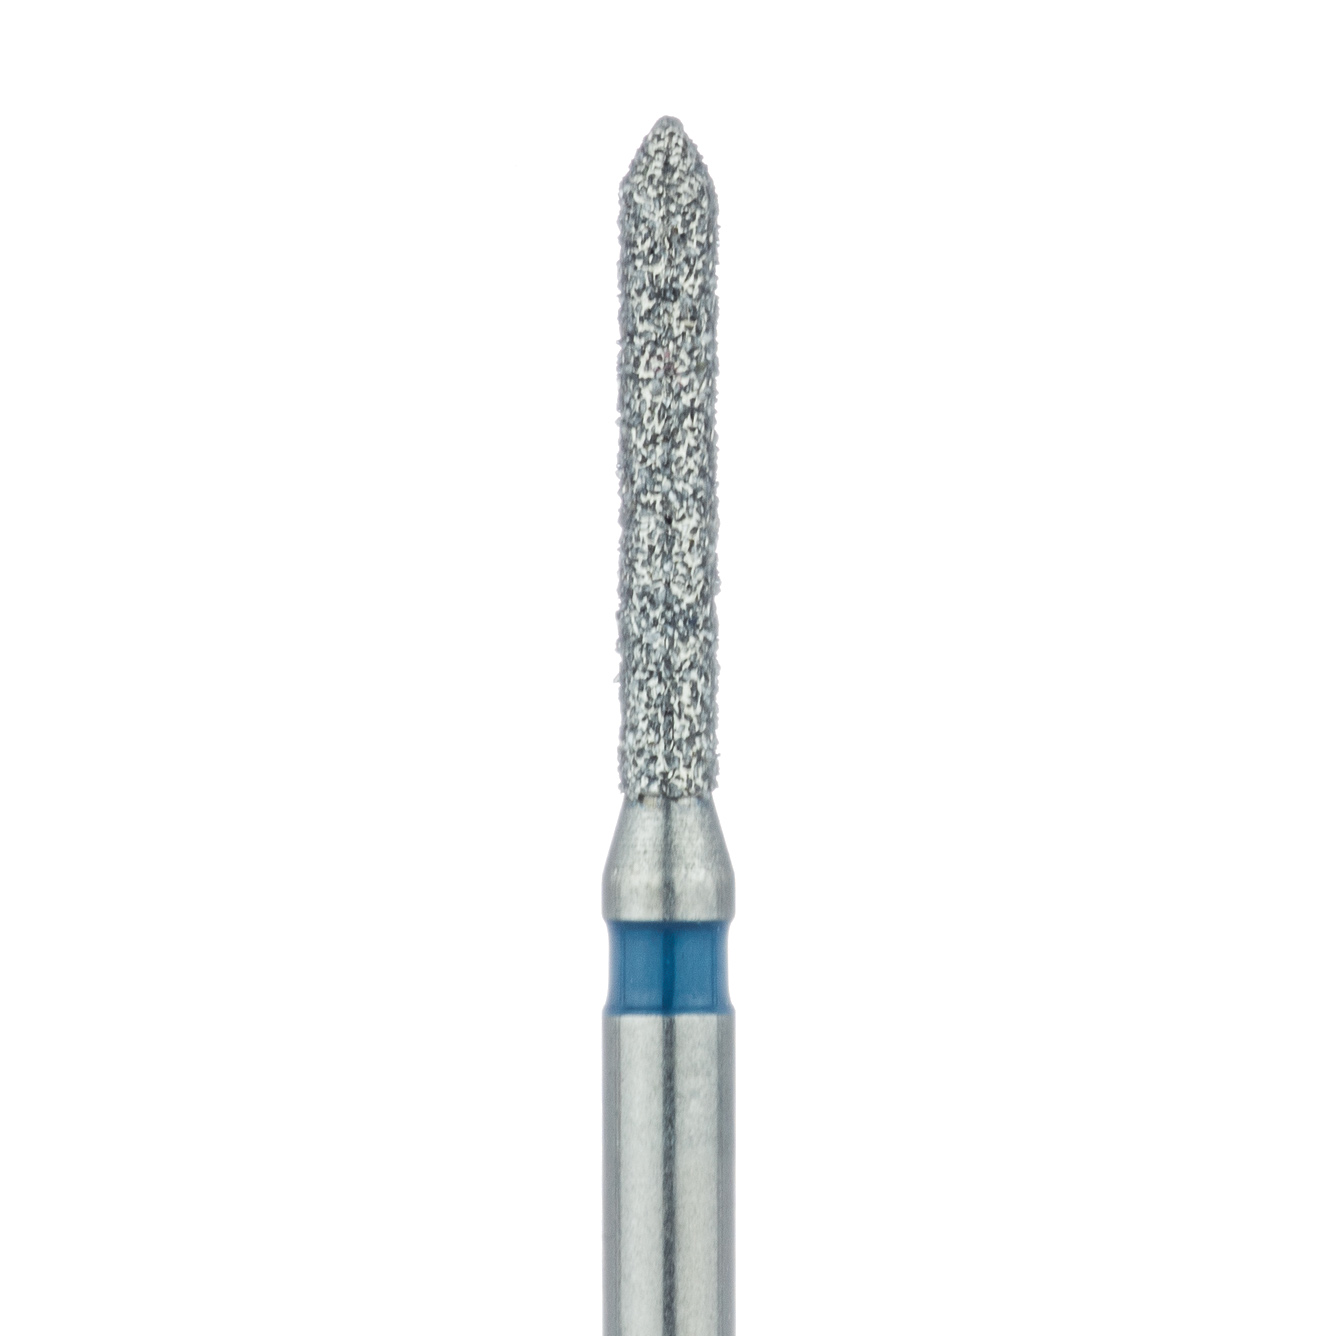 885-012-FG Pointed Tip Cylinder Diamond Bur, 1.2mm Ø, Medium, FG